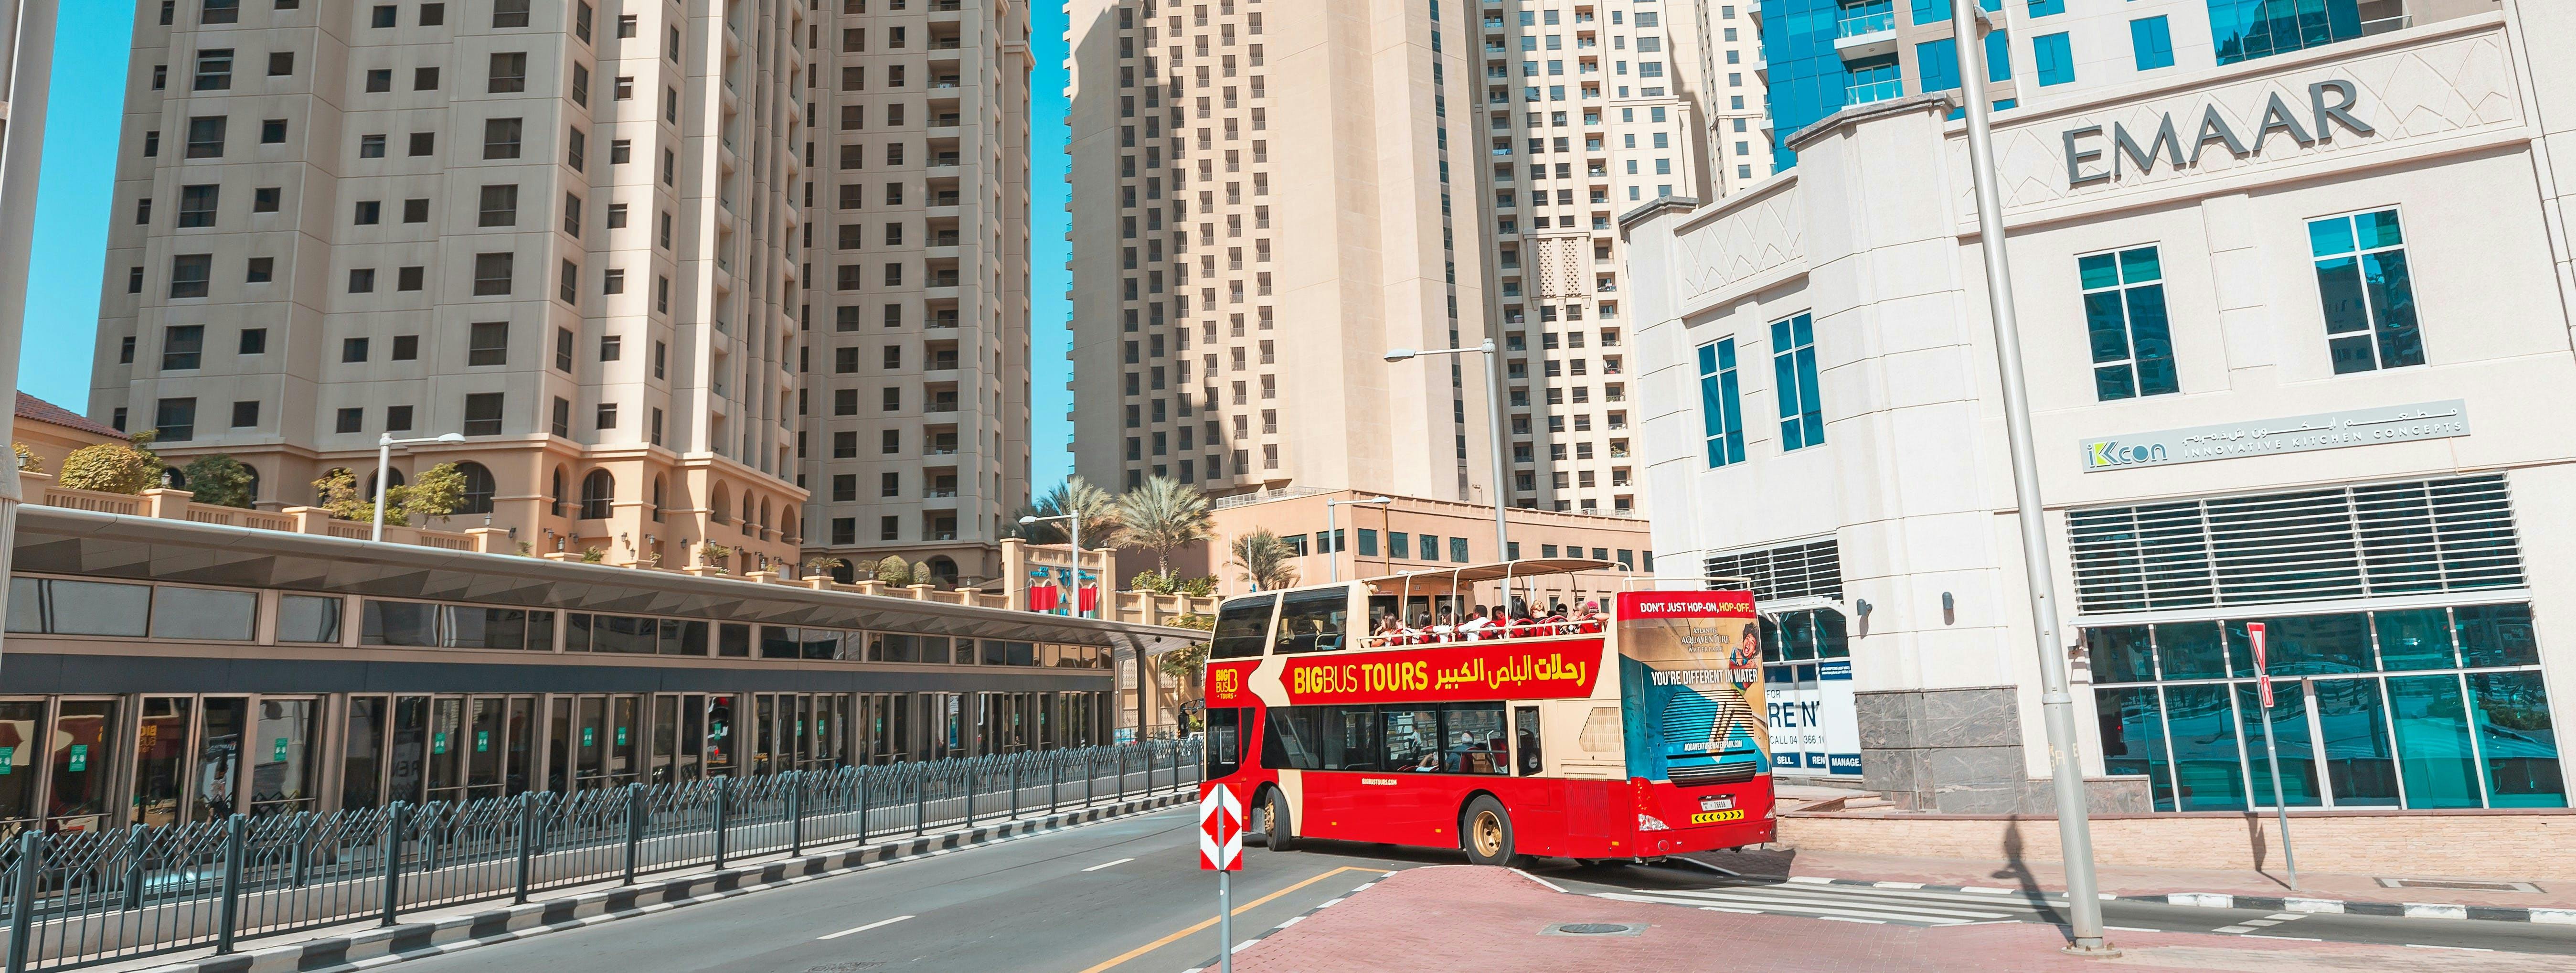 Wycieczka dużym autobusem po Dubaju